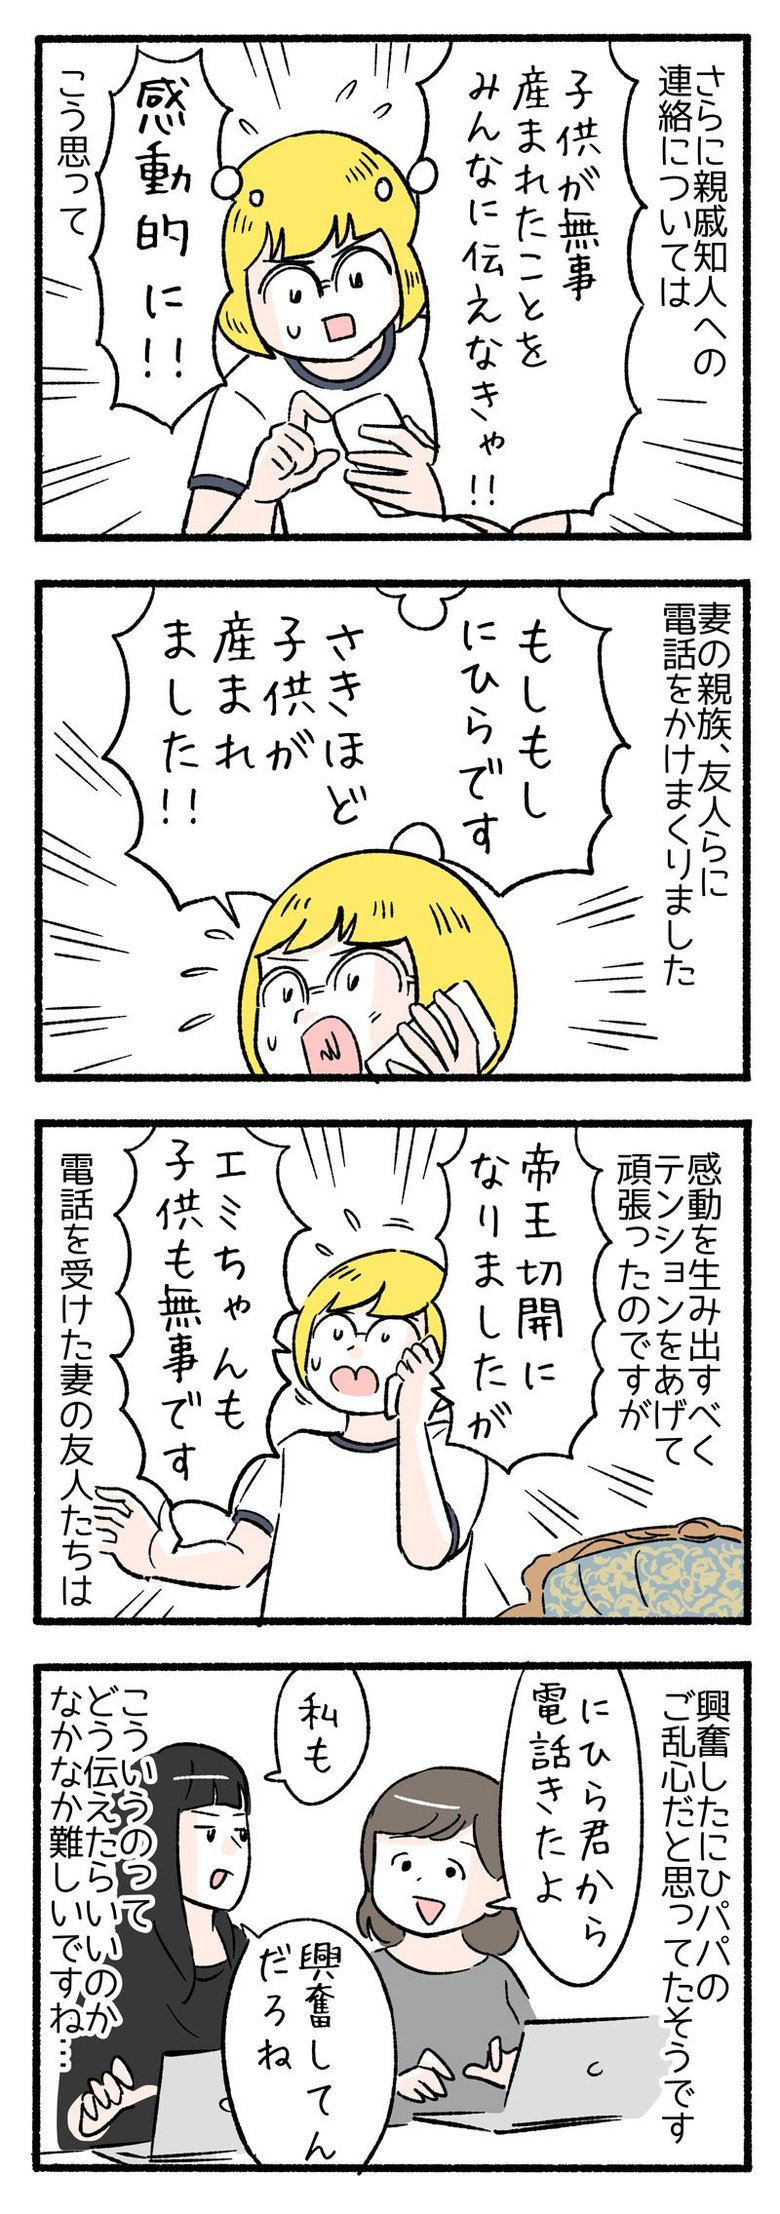 manga-nihipapa4-5